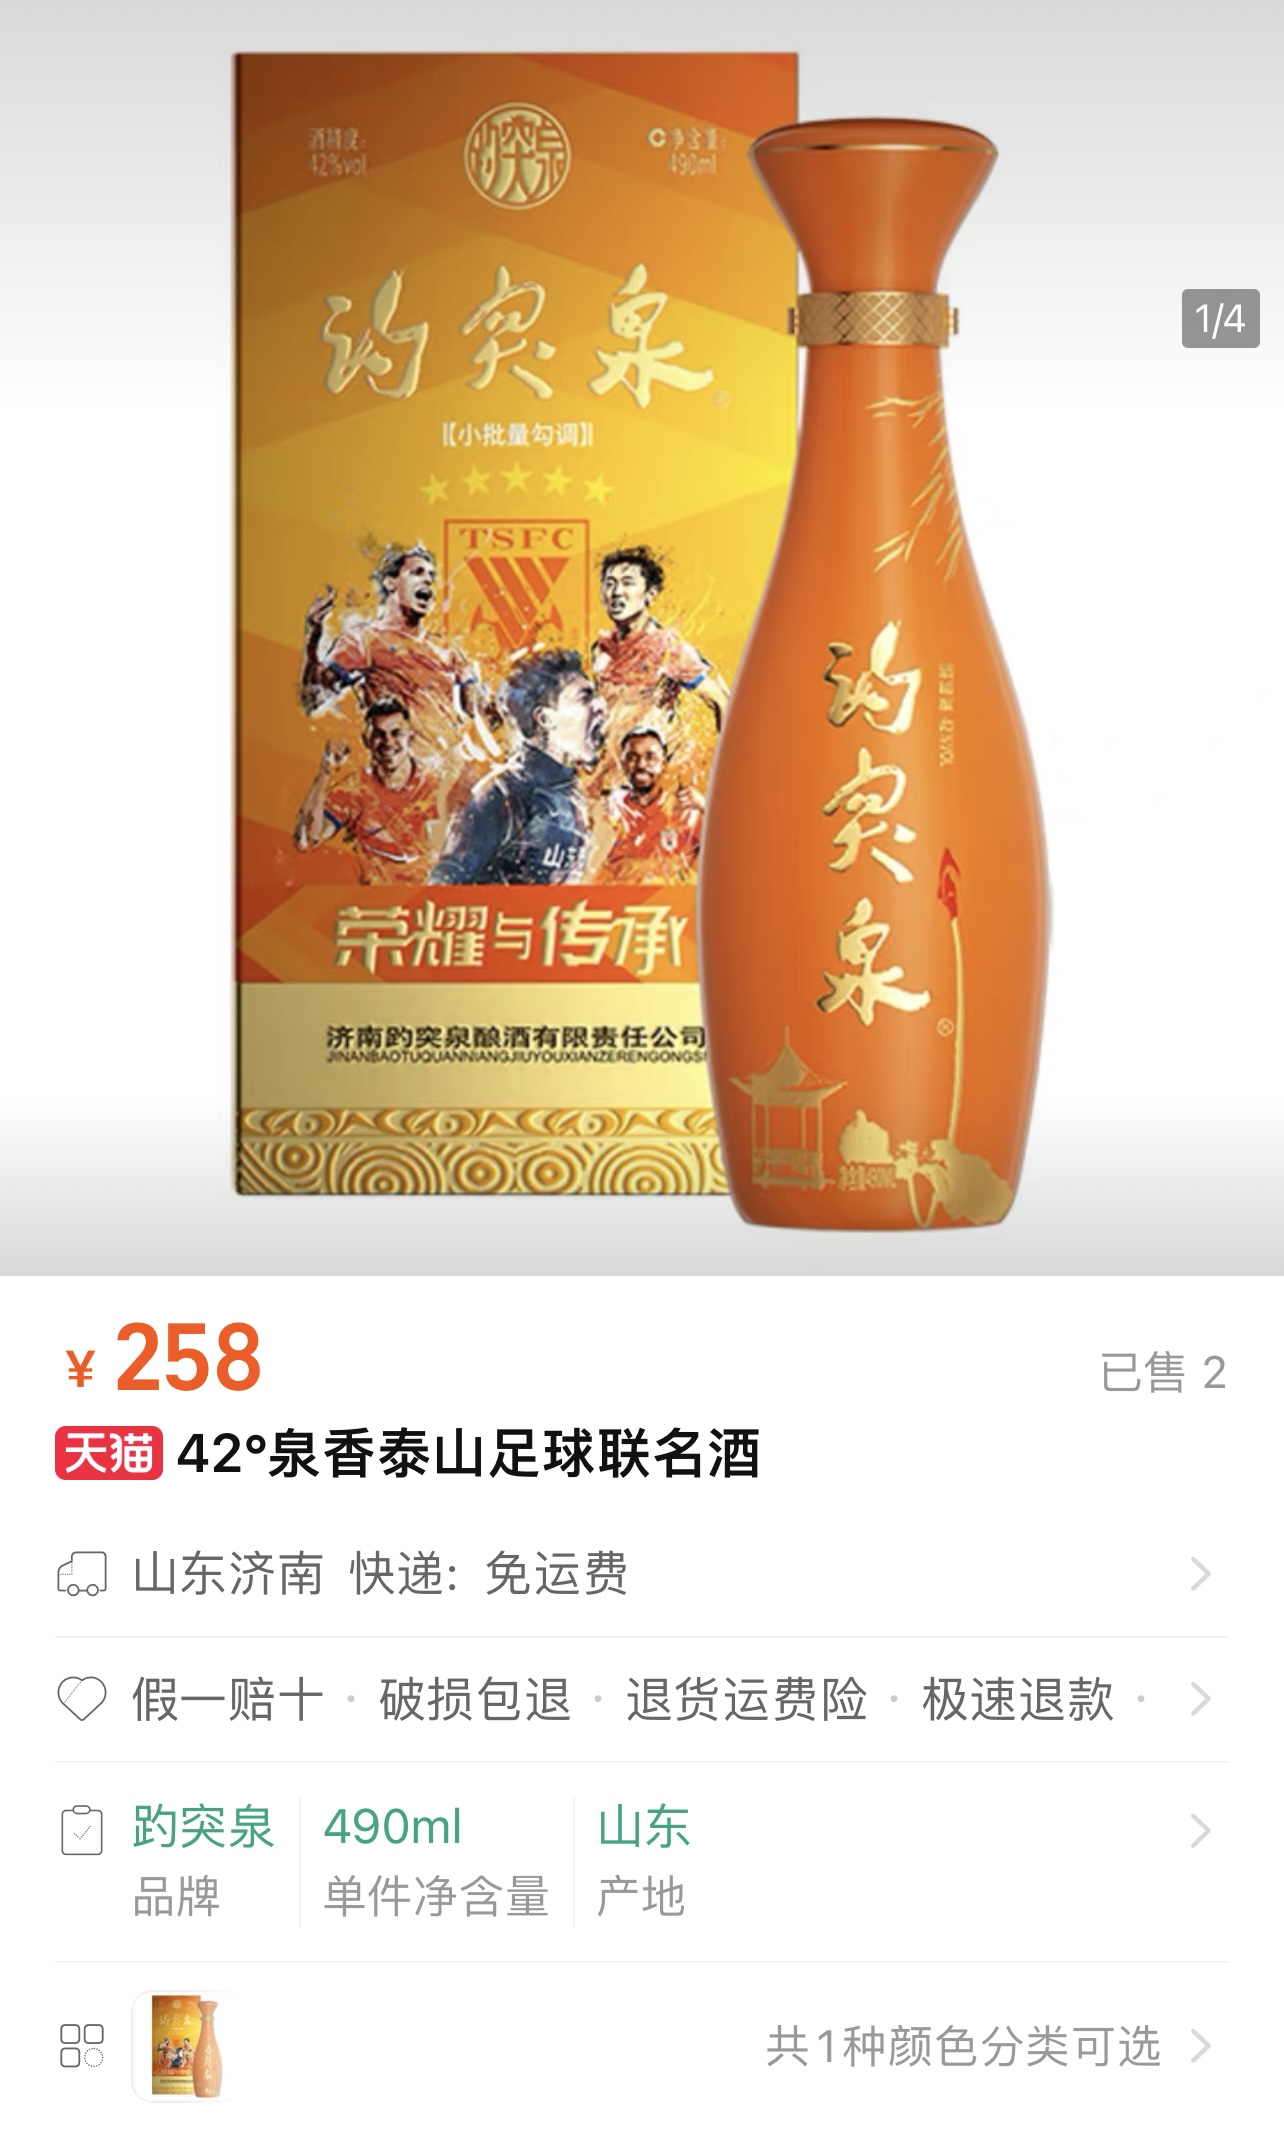 258元瓶泰山足球趵突泉“42泉香泰山足球联名酒”上市